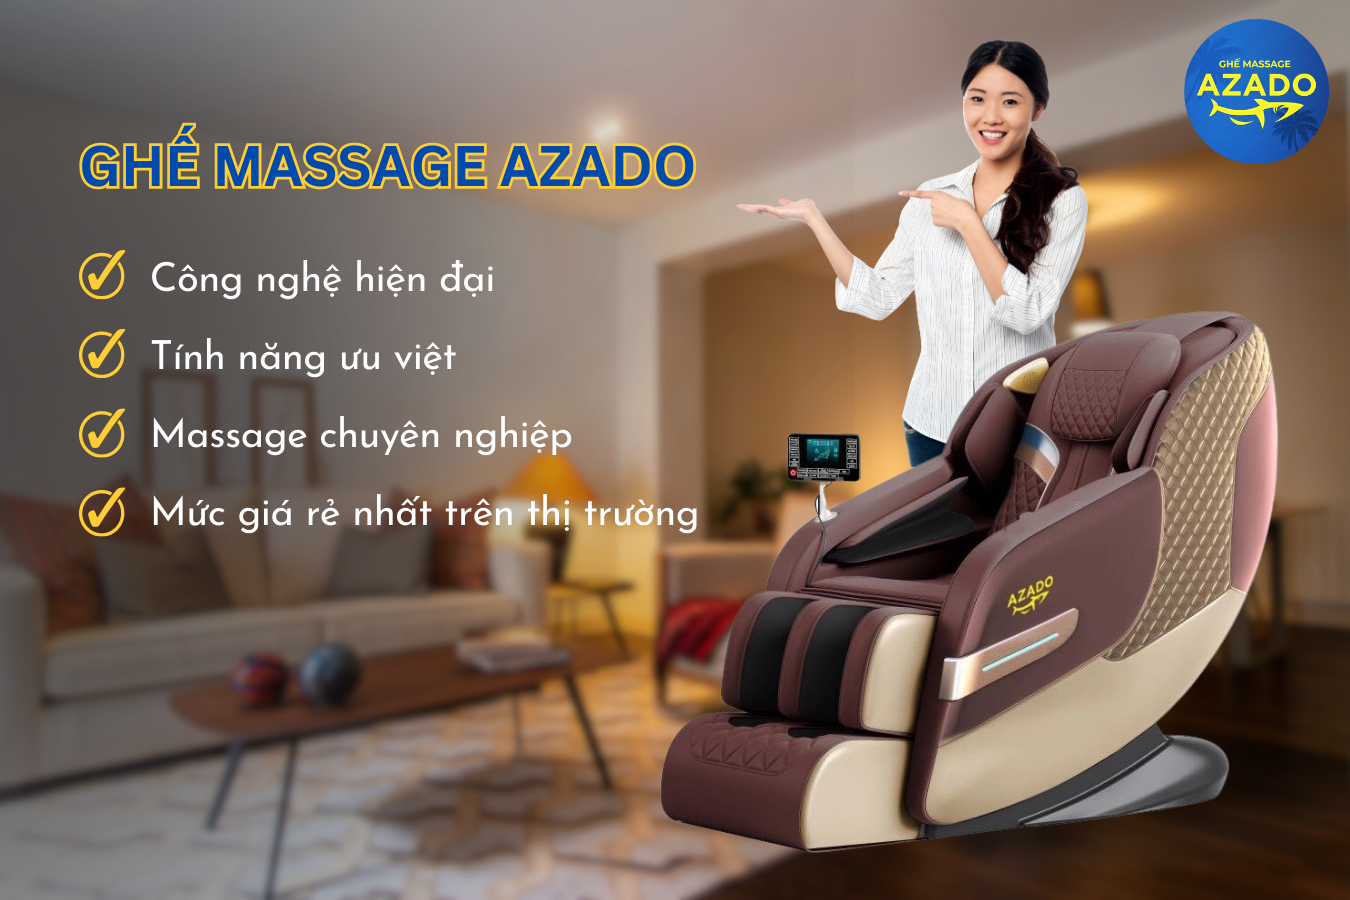 Ghế massage AZADO sở hữu nhiều ưu điểm vượt trội